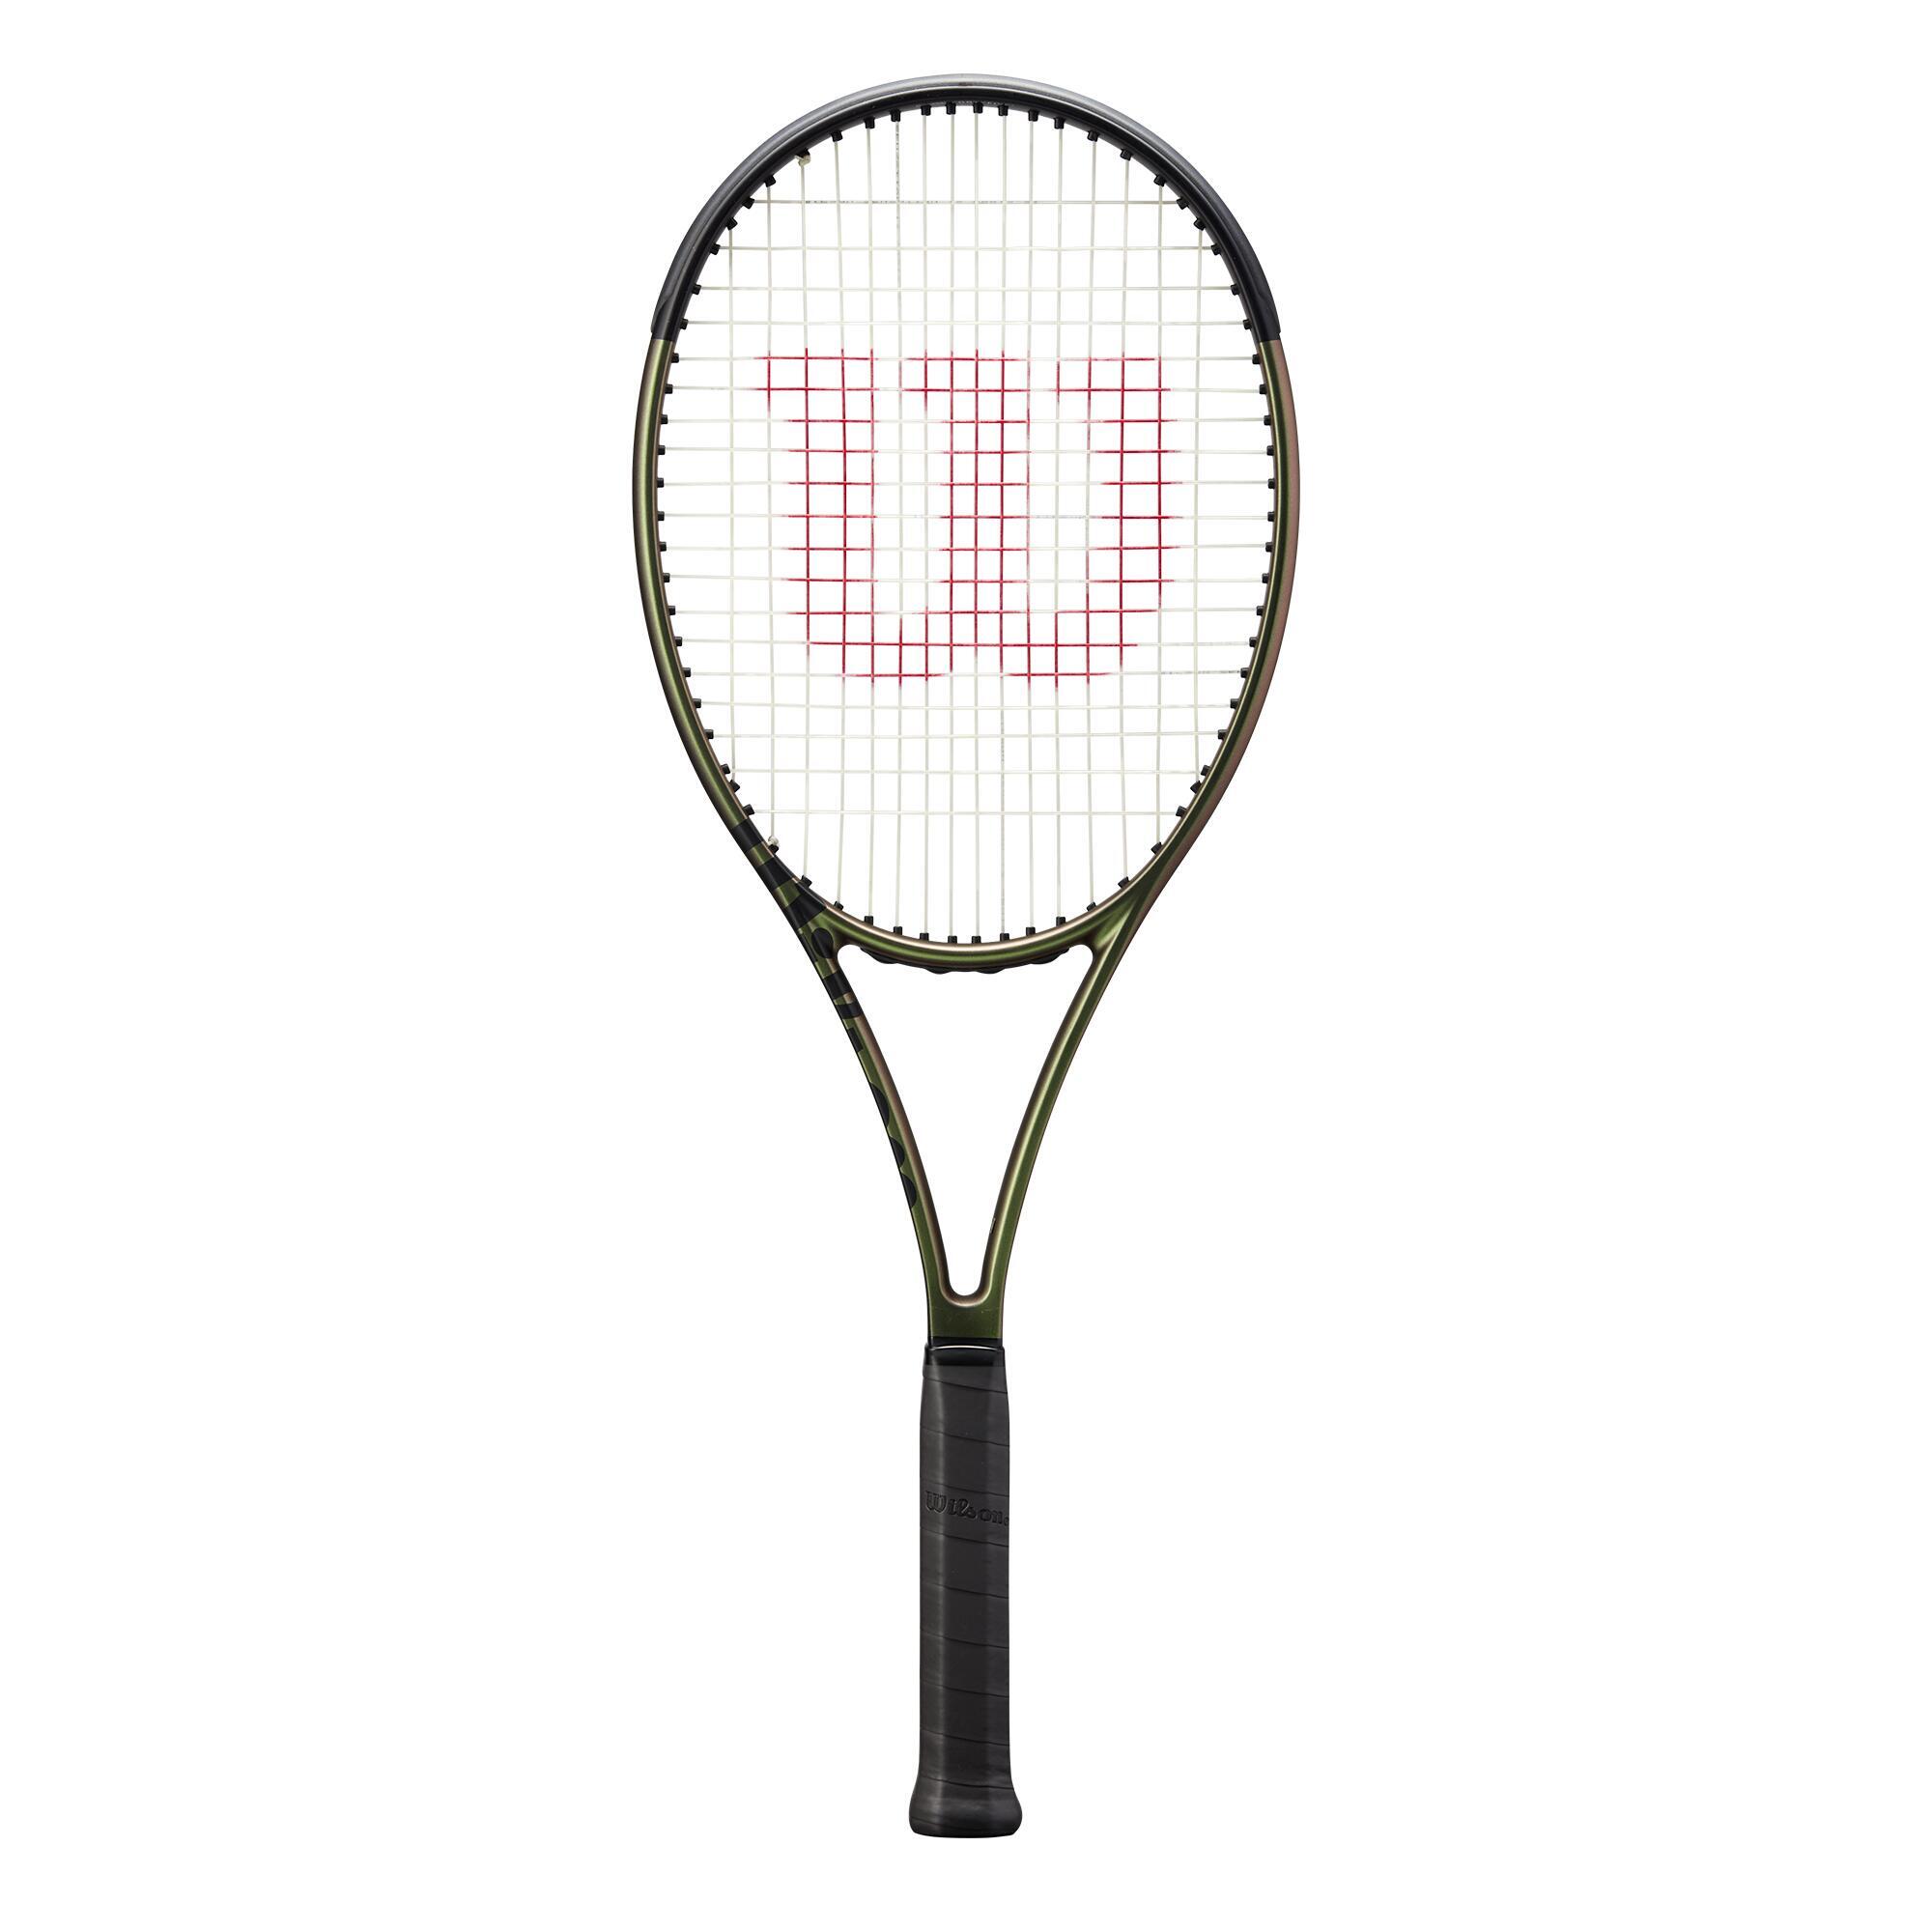 Теннисная ракетка Wilson - Blade 98 16×19 V8 Зеленая 305 г, темно-зеленый/черный